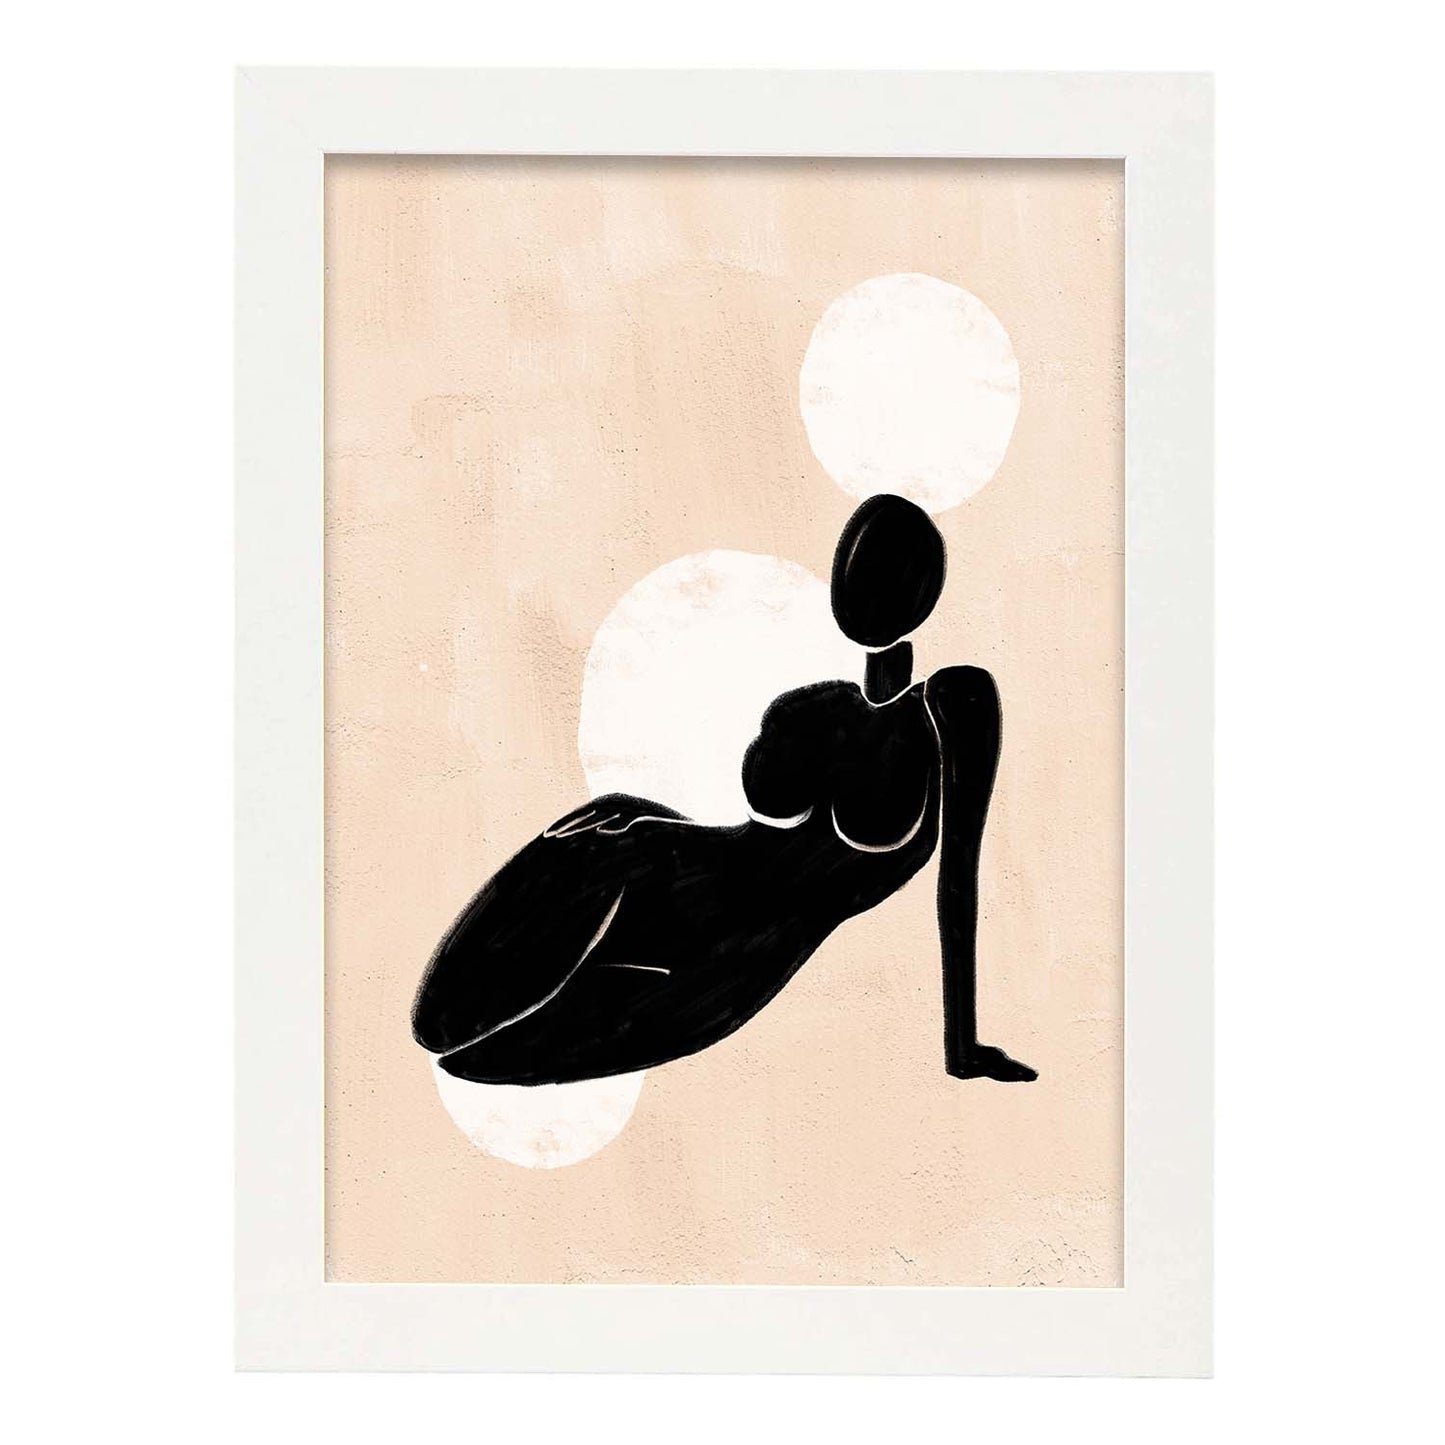 Poster con ilustracion de mujer. Dibujos con formas, caras, cuerpos y gestos de mujeres. 'Mujeres 8'.-Artwork-Nacnic-A3-Marco Blanco-Nacnic Estudio SL